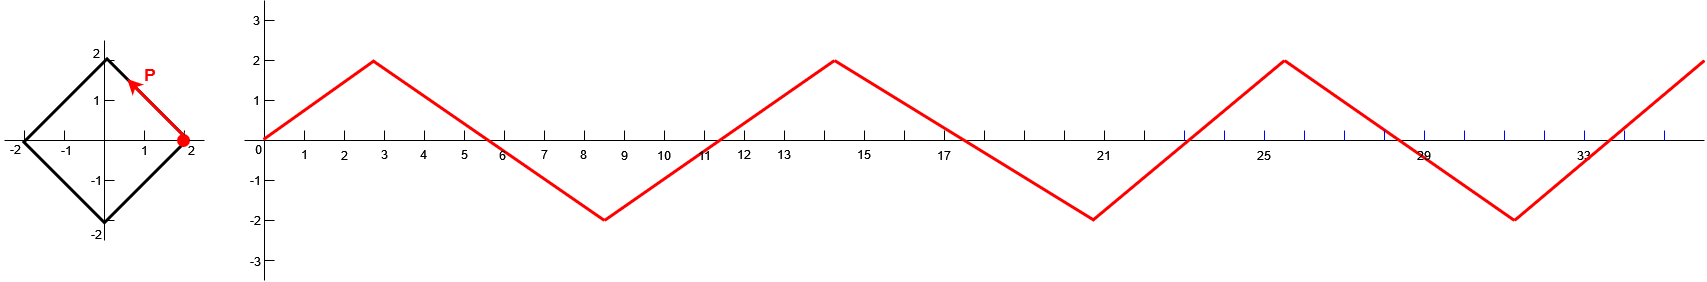 voorbeeld 2 van een periodieke functie 